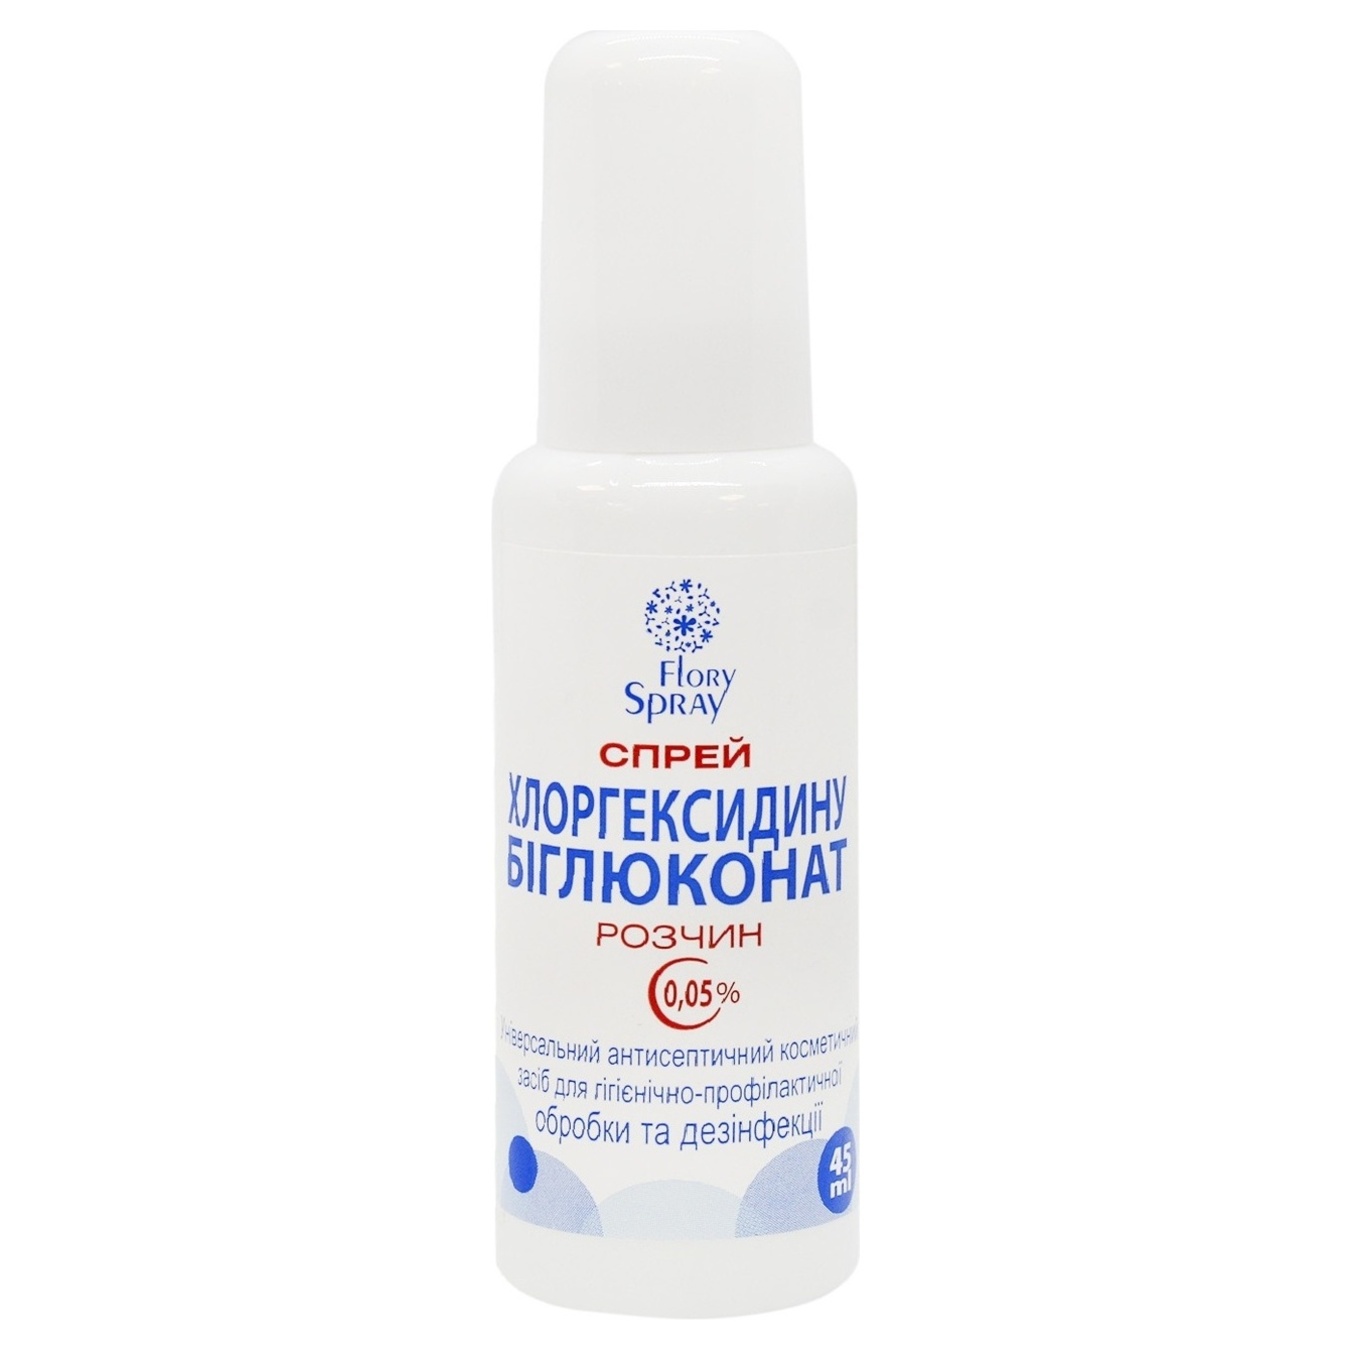 Спрей Flory Spray для догляду за шкірою тіла Хлоргексидину біглюконат розчин 0,05% 45мл